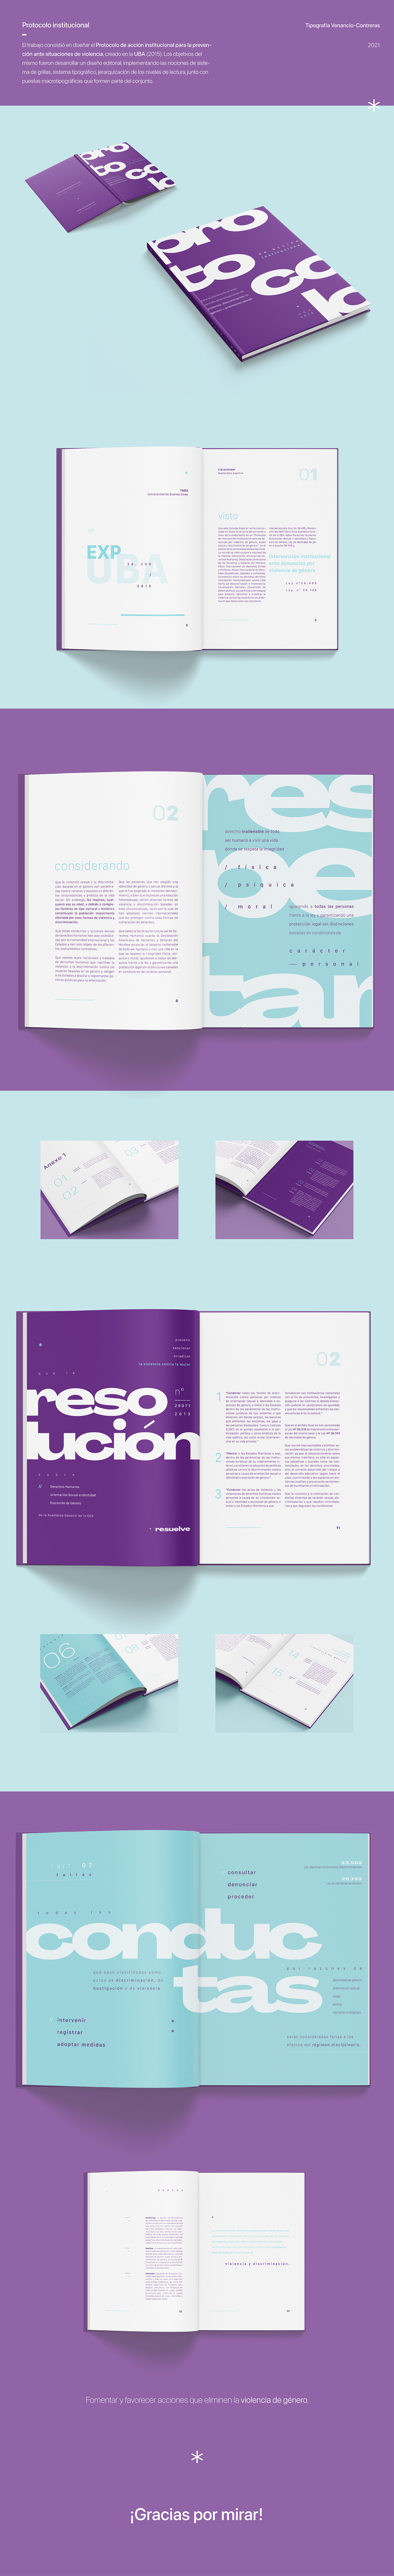 Diseño editorial diseño gráfico editorial design  graphic design  tipografia typography  